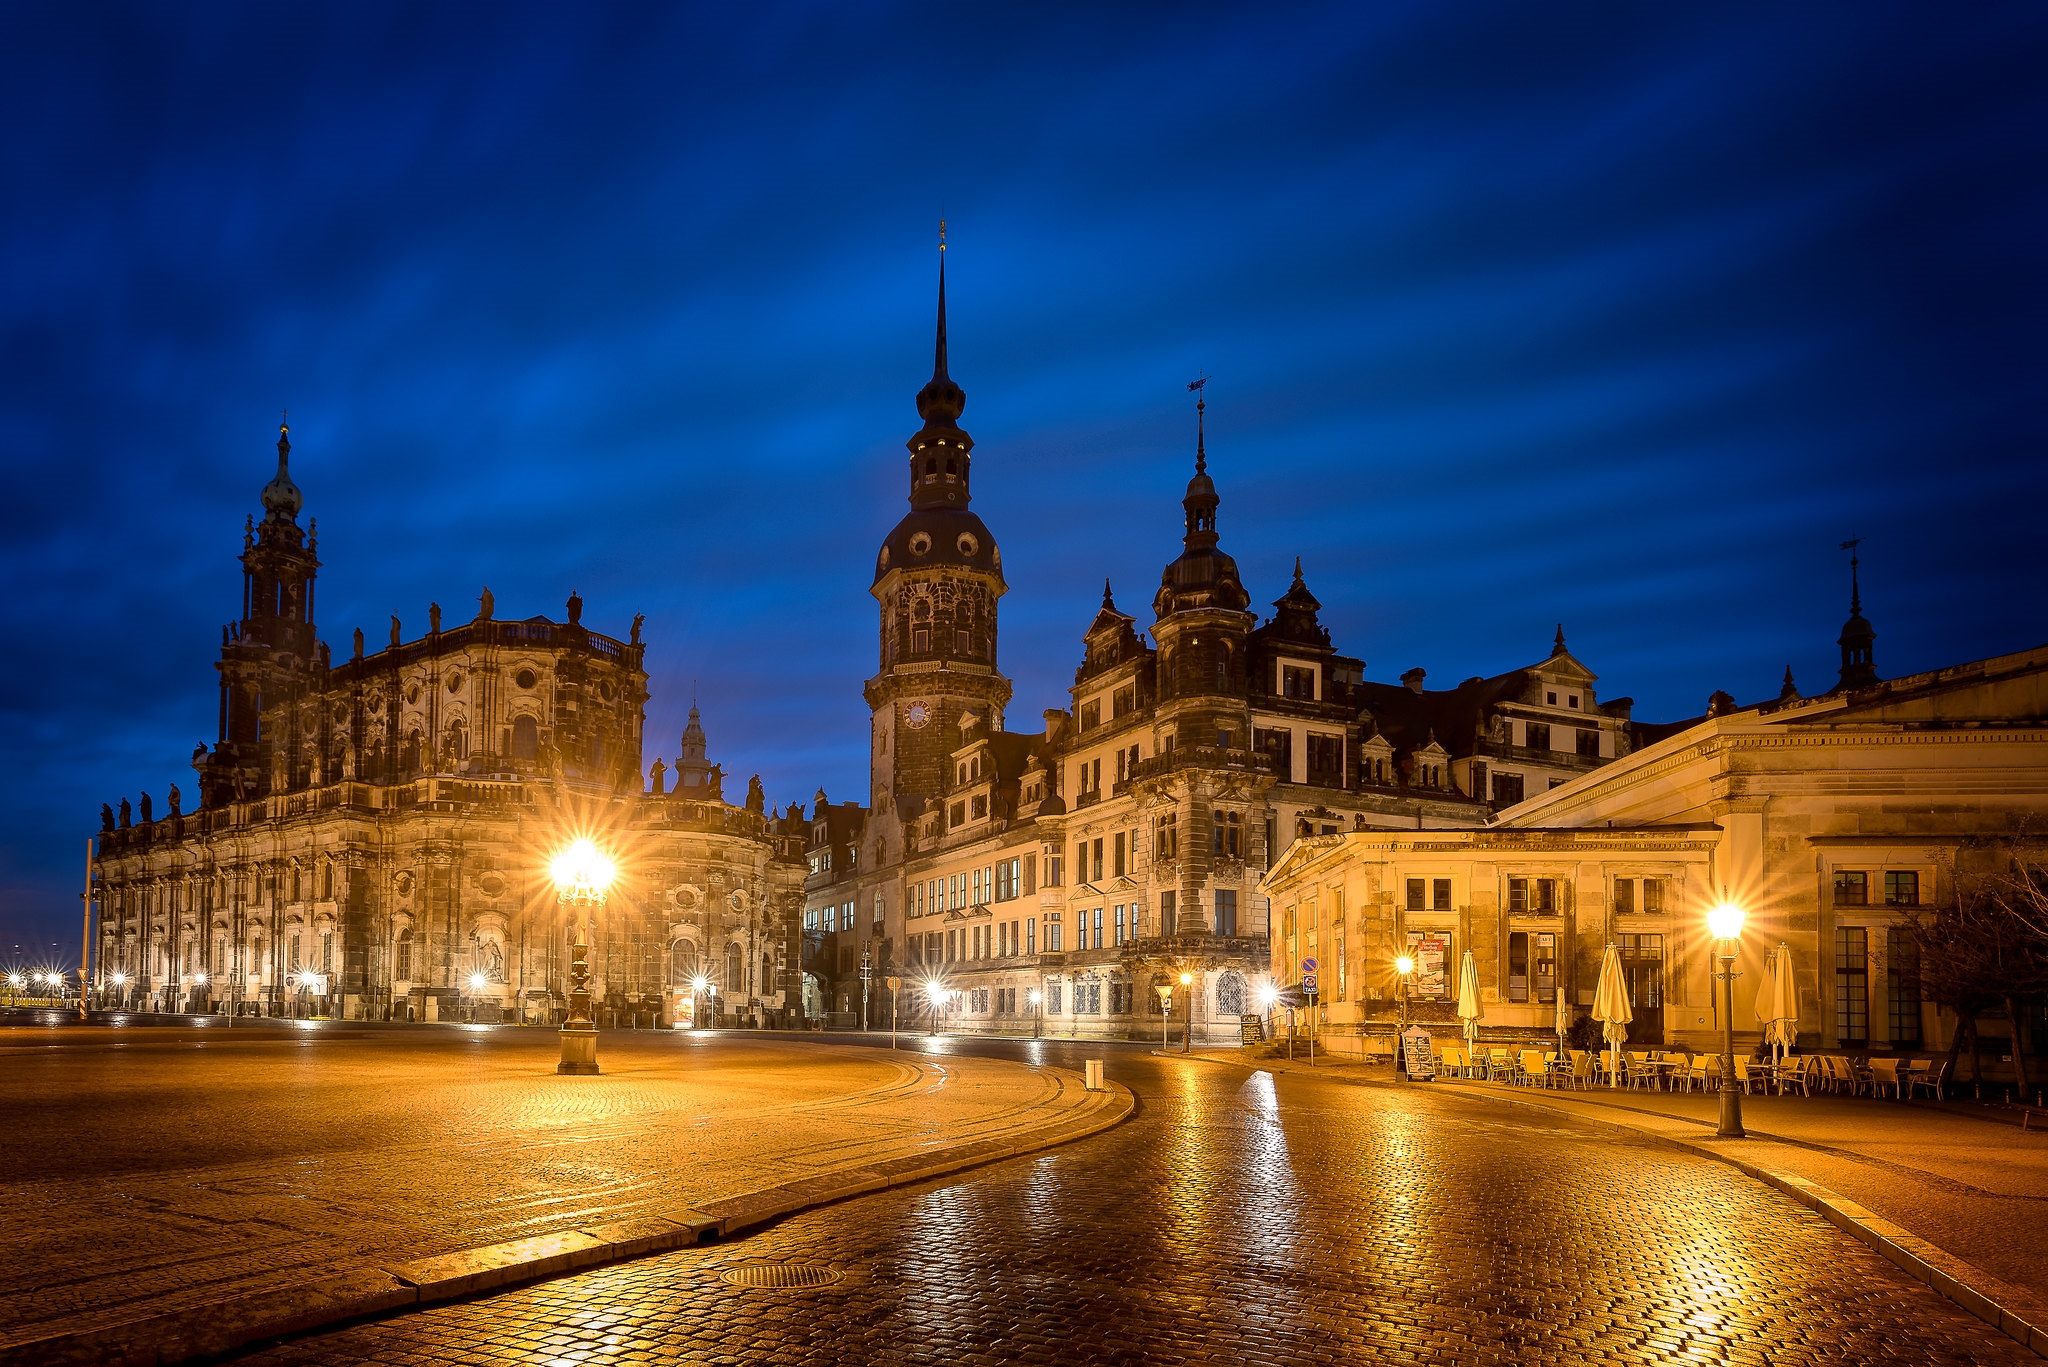 Wallpapers lights buildings Dresden on the desktop